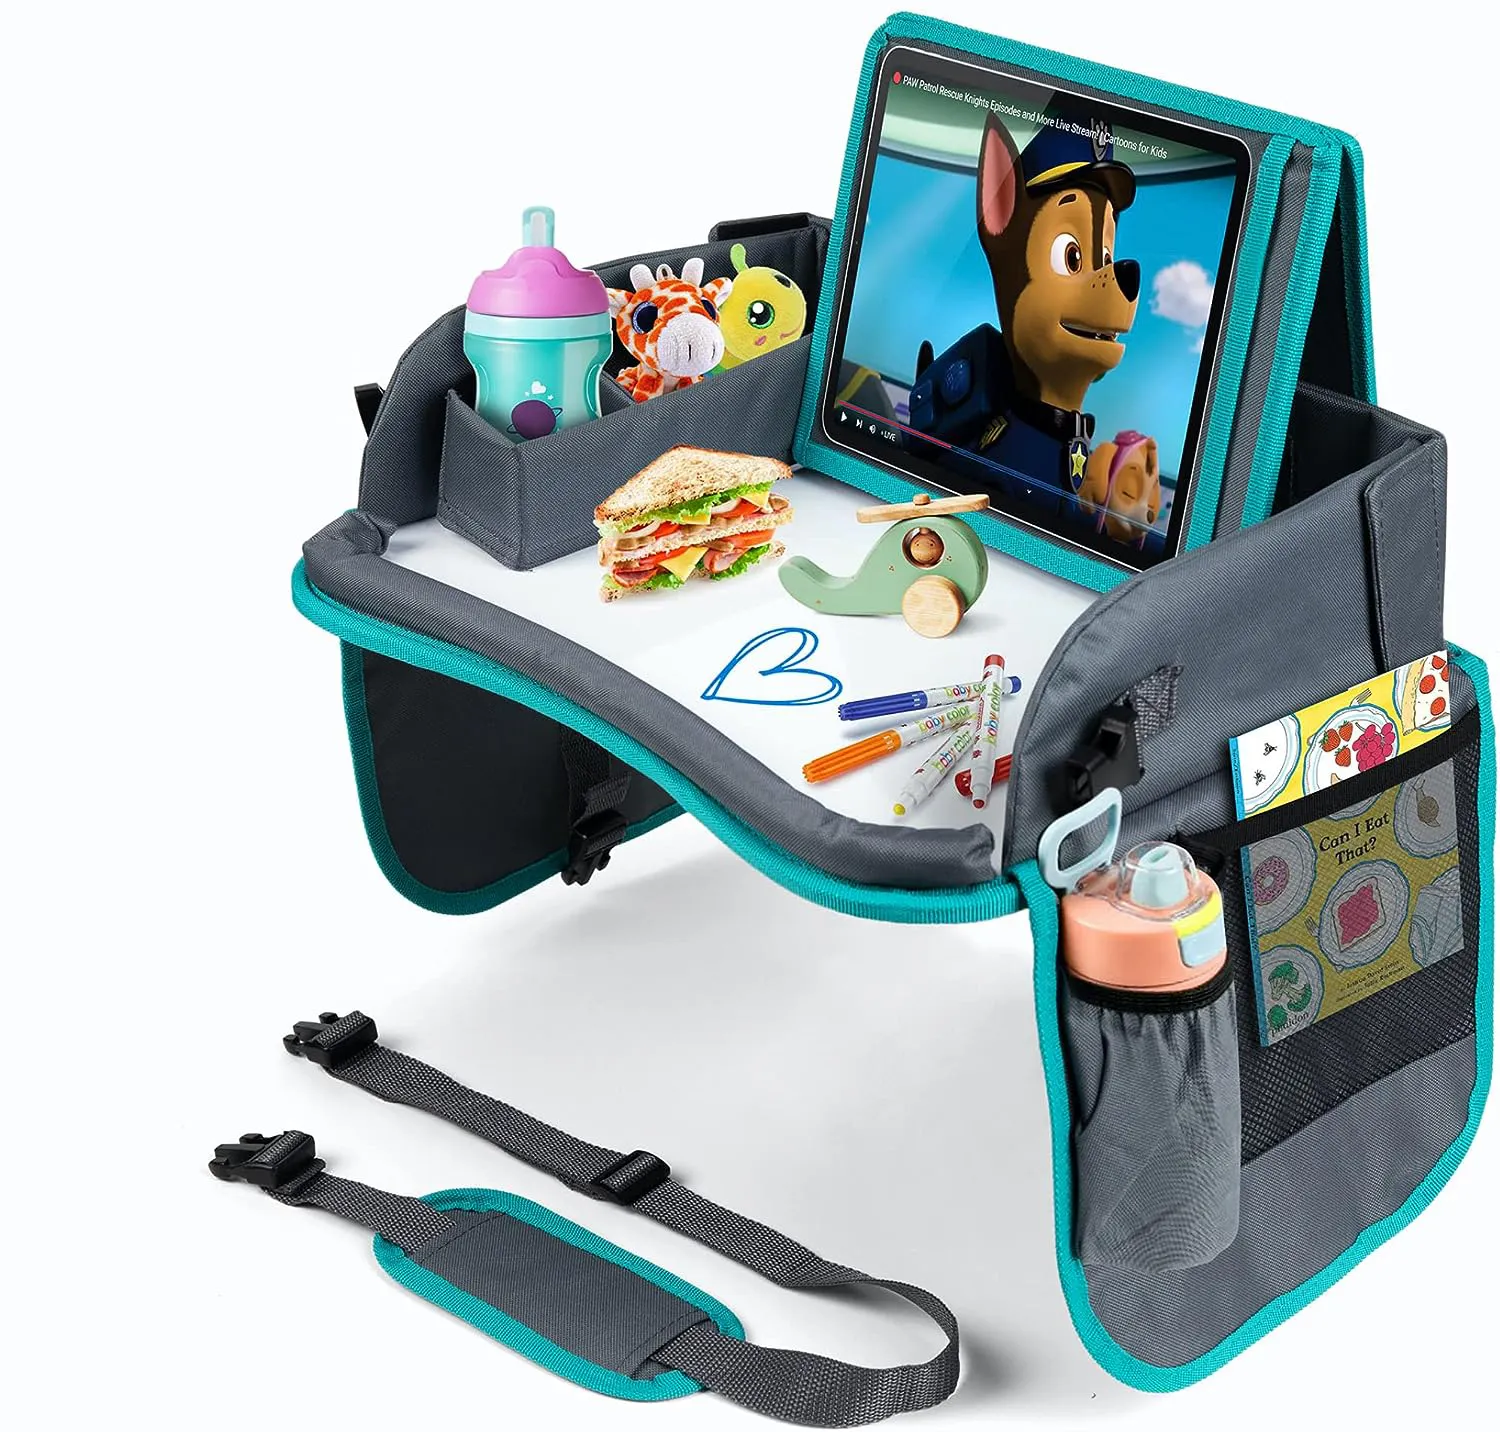 Du lịch không khí thực phẩm & chơi hoạt động tổ chức ghế xe trẻ em chơi khay với máy tính bảng chủ